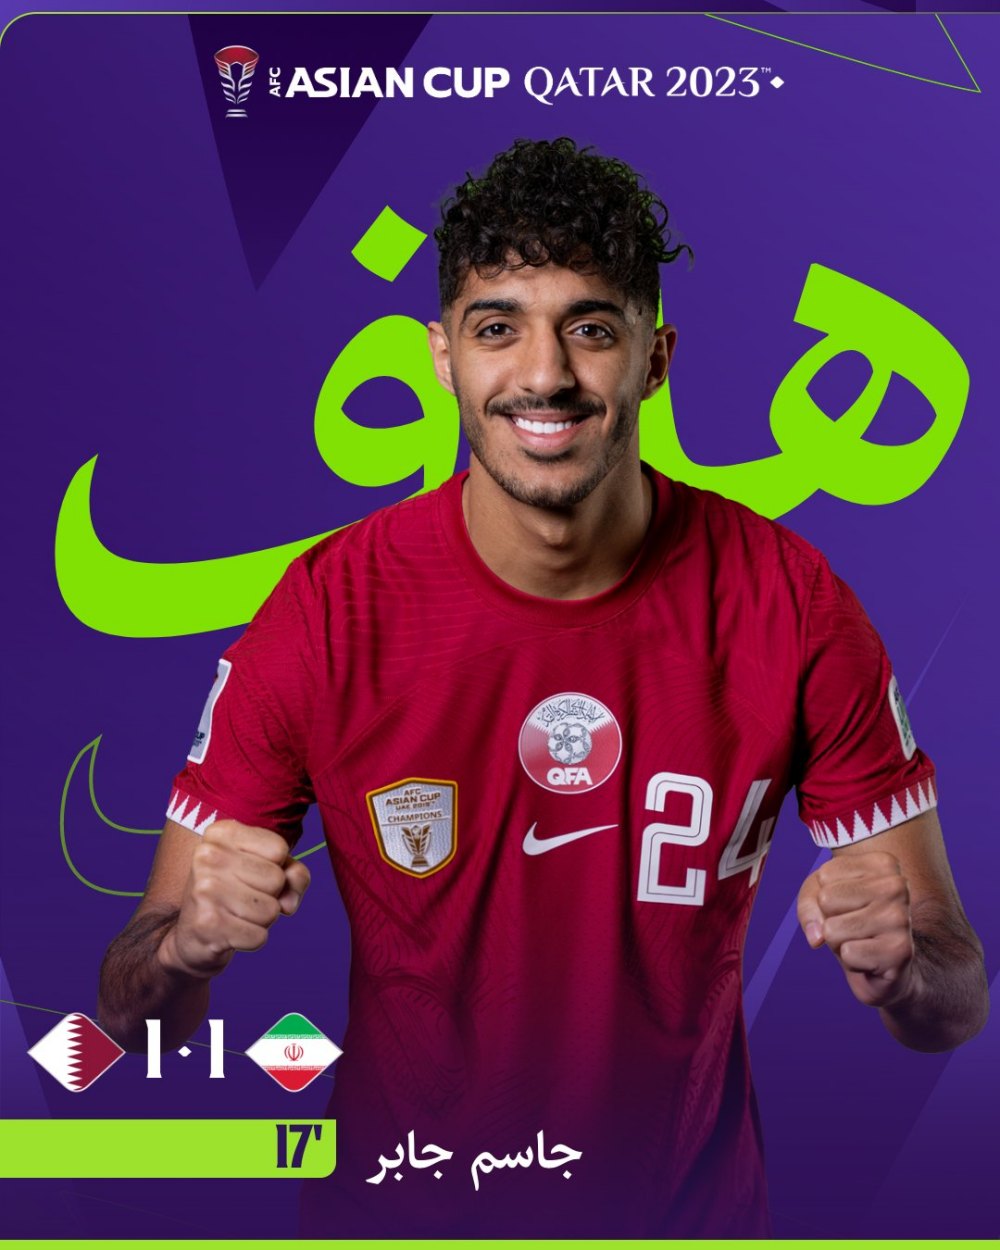 Jassem Jaber đưa tỉ số trận đấu về thế cân bằng. Ảnh: Asian Cup 2023